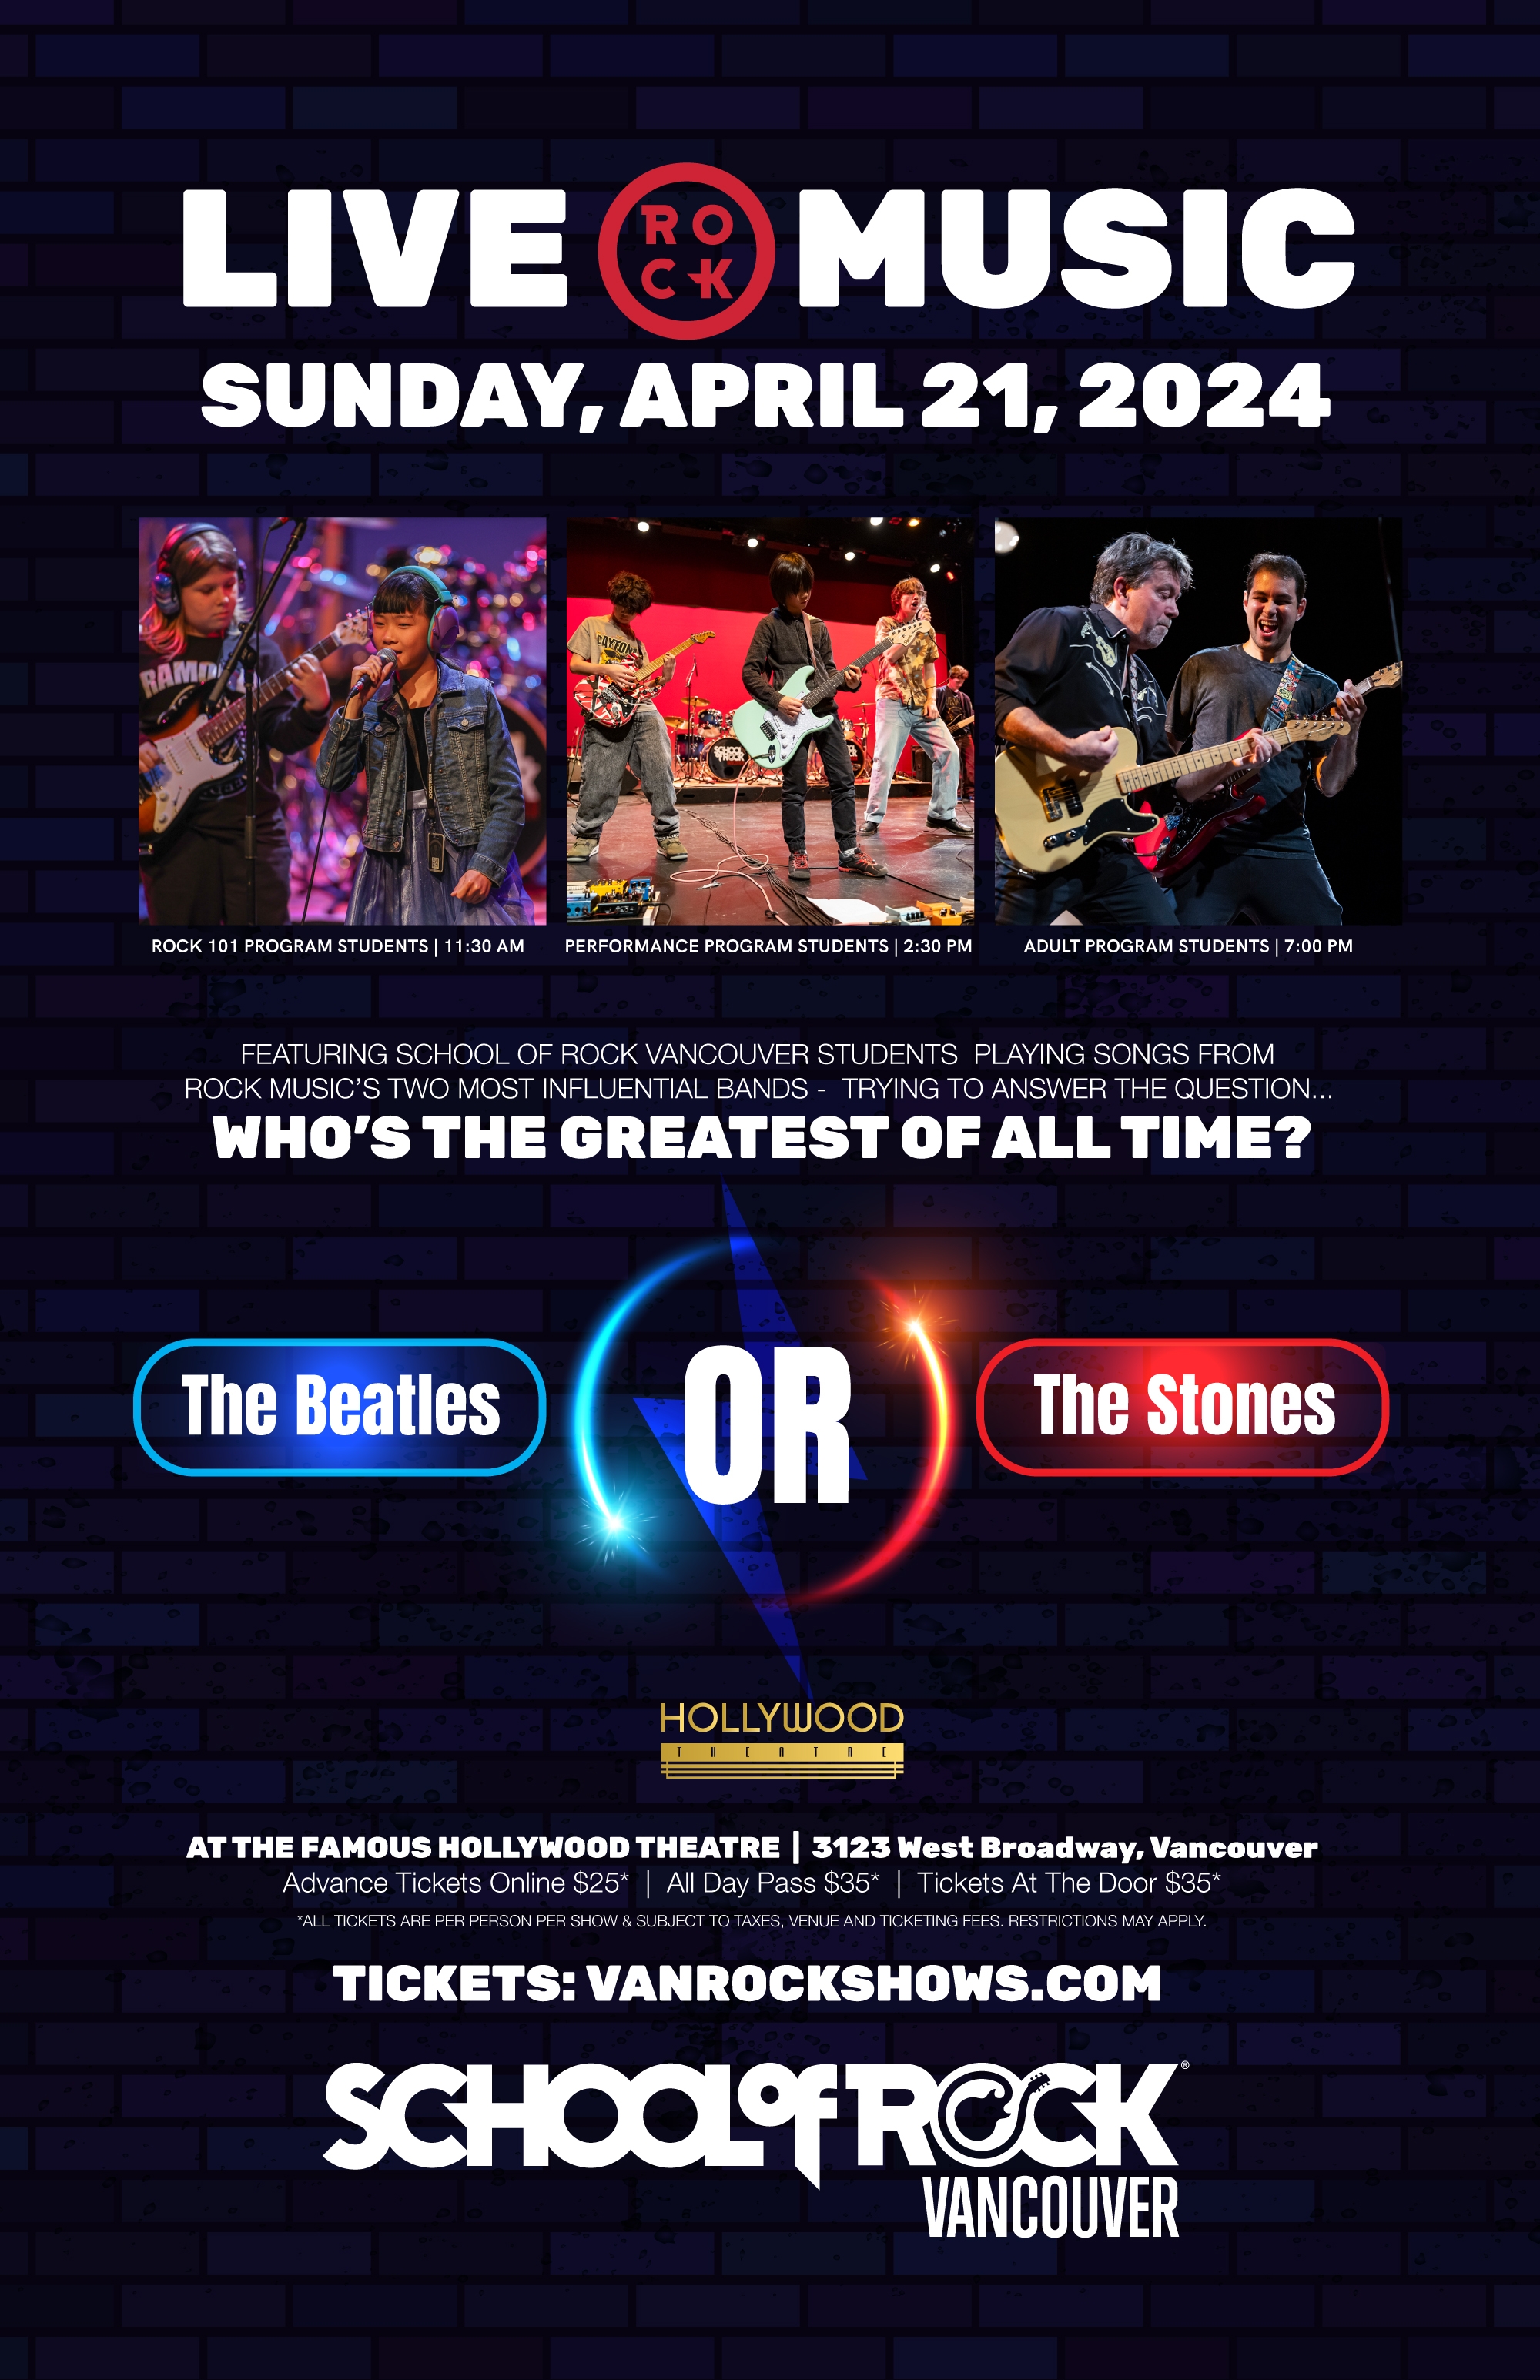 School of Rock Vancouver Beatles vs Stones Show Poster